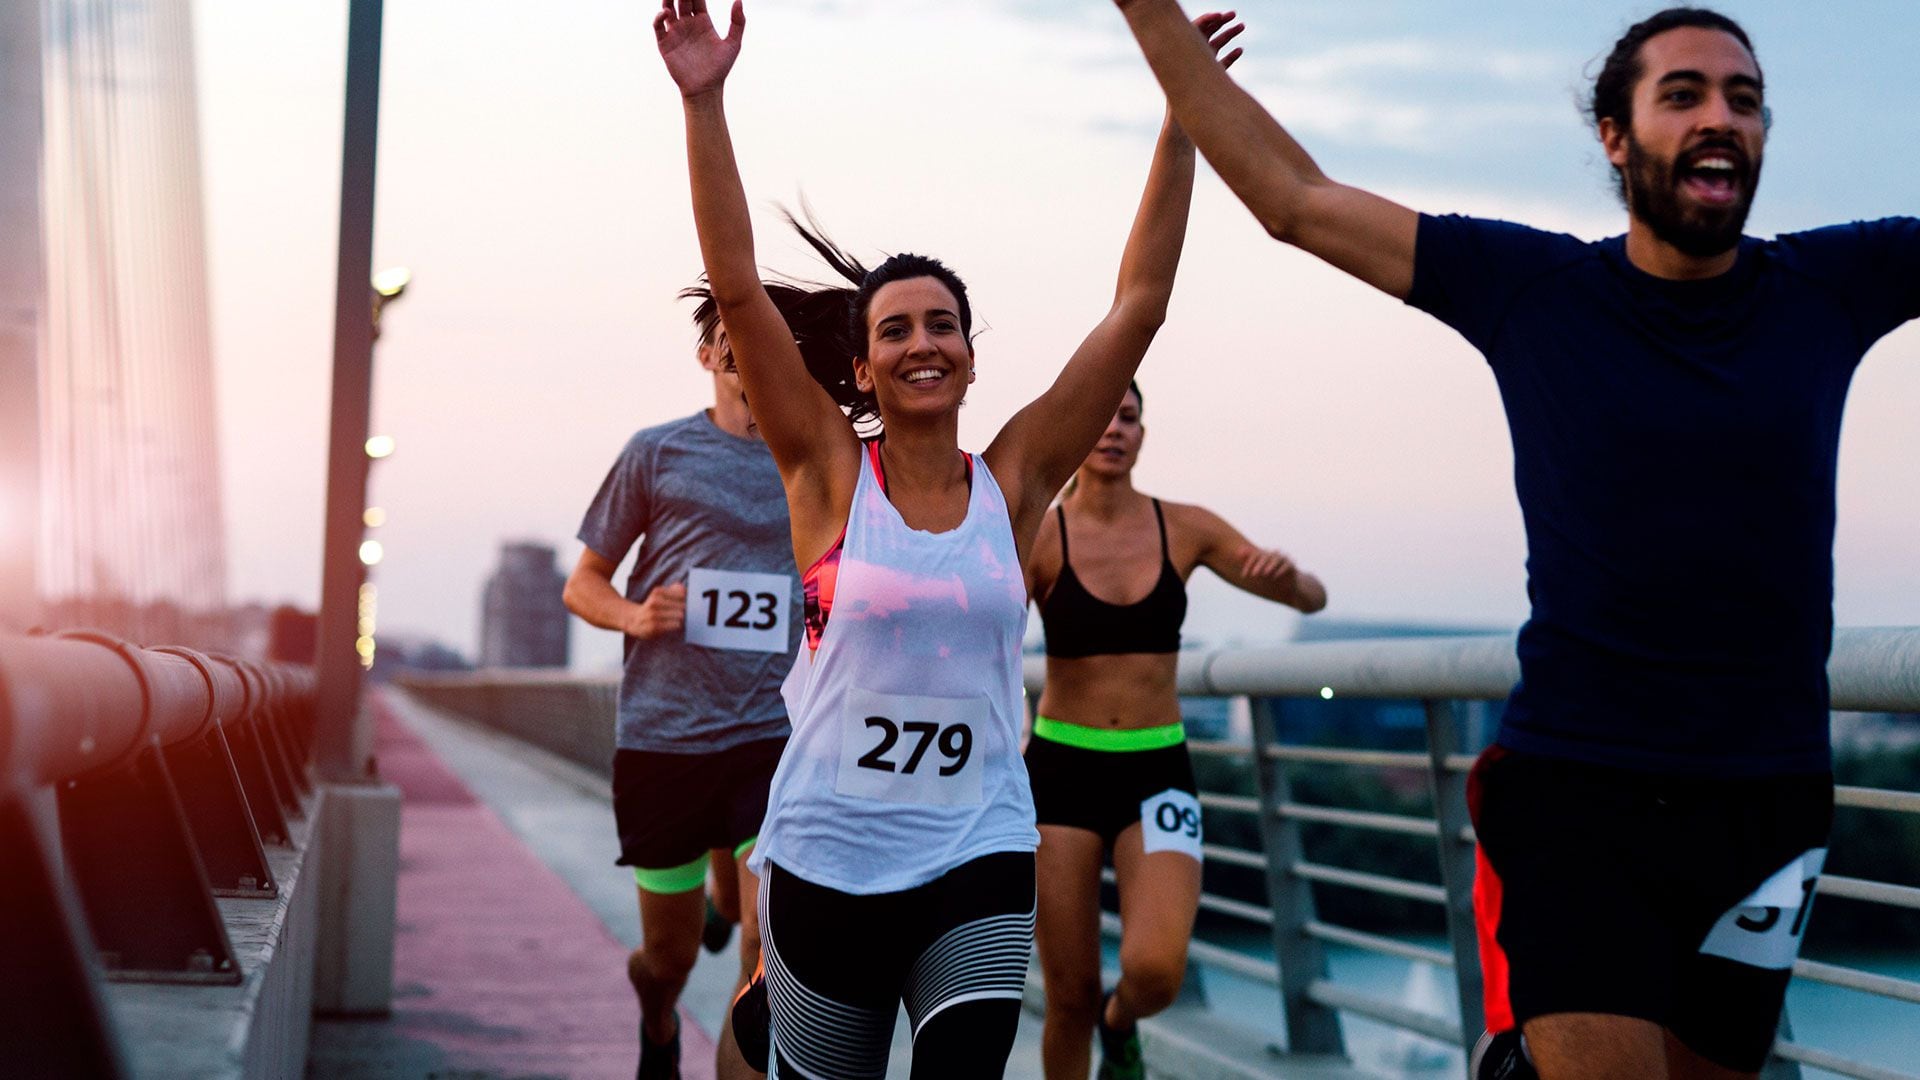 Correr con amigos o en un equipo de running hace más placentero el entrenamiento (Getty) 